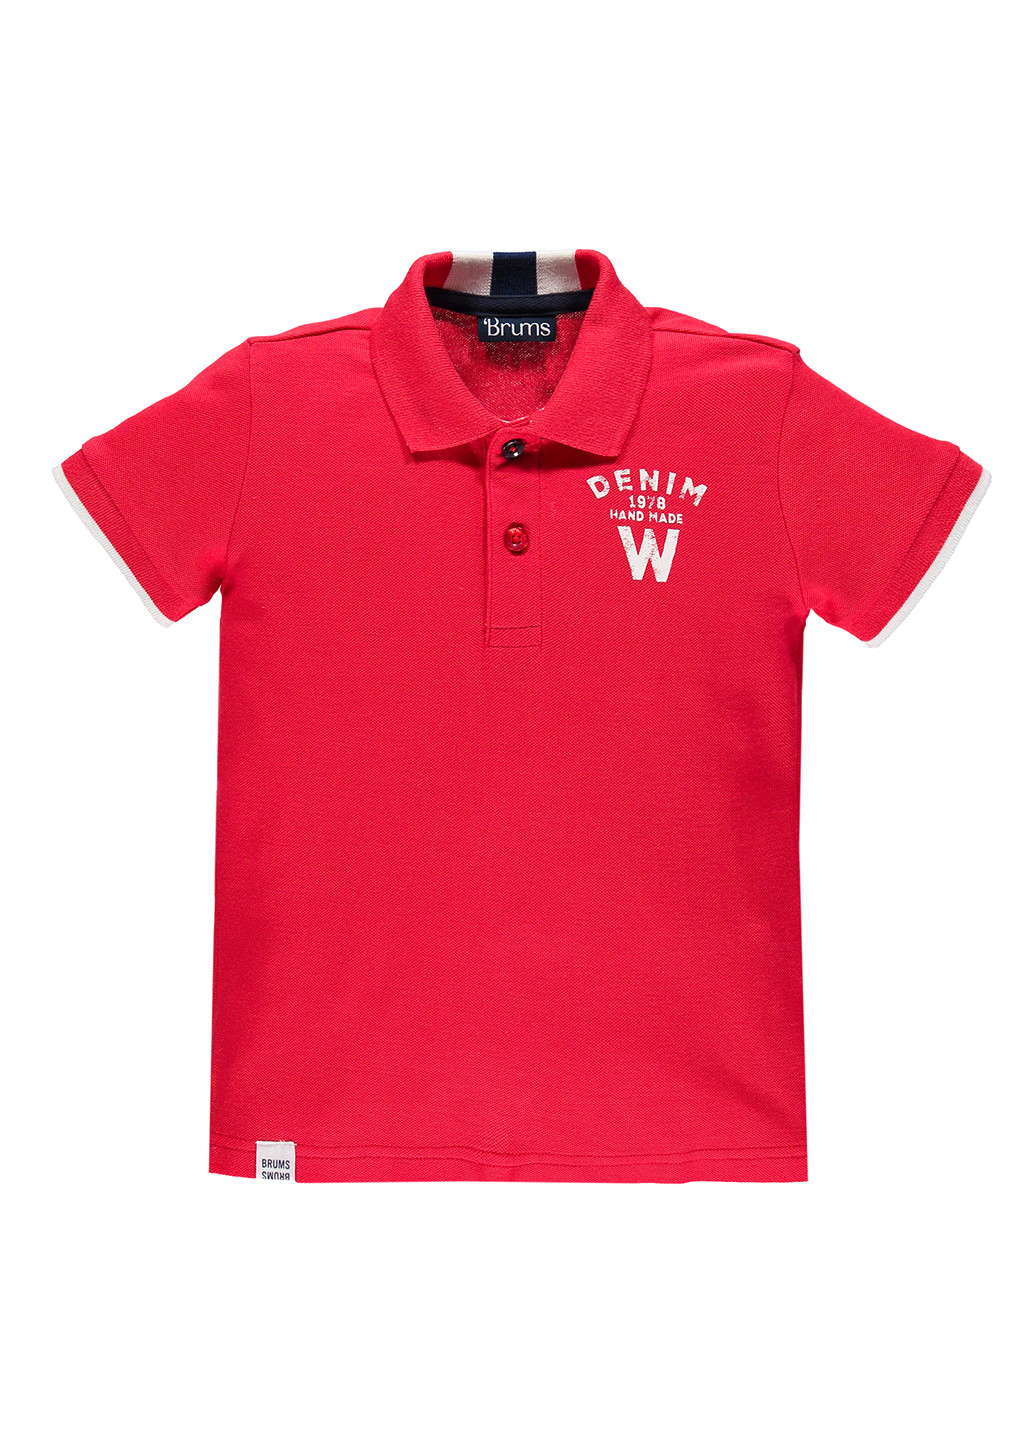 Красная детская футболка-поло для мальчика Brums с надписью